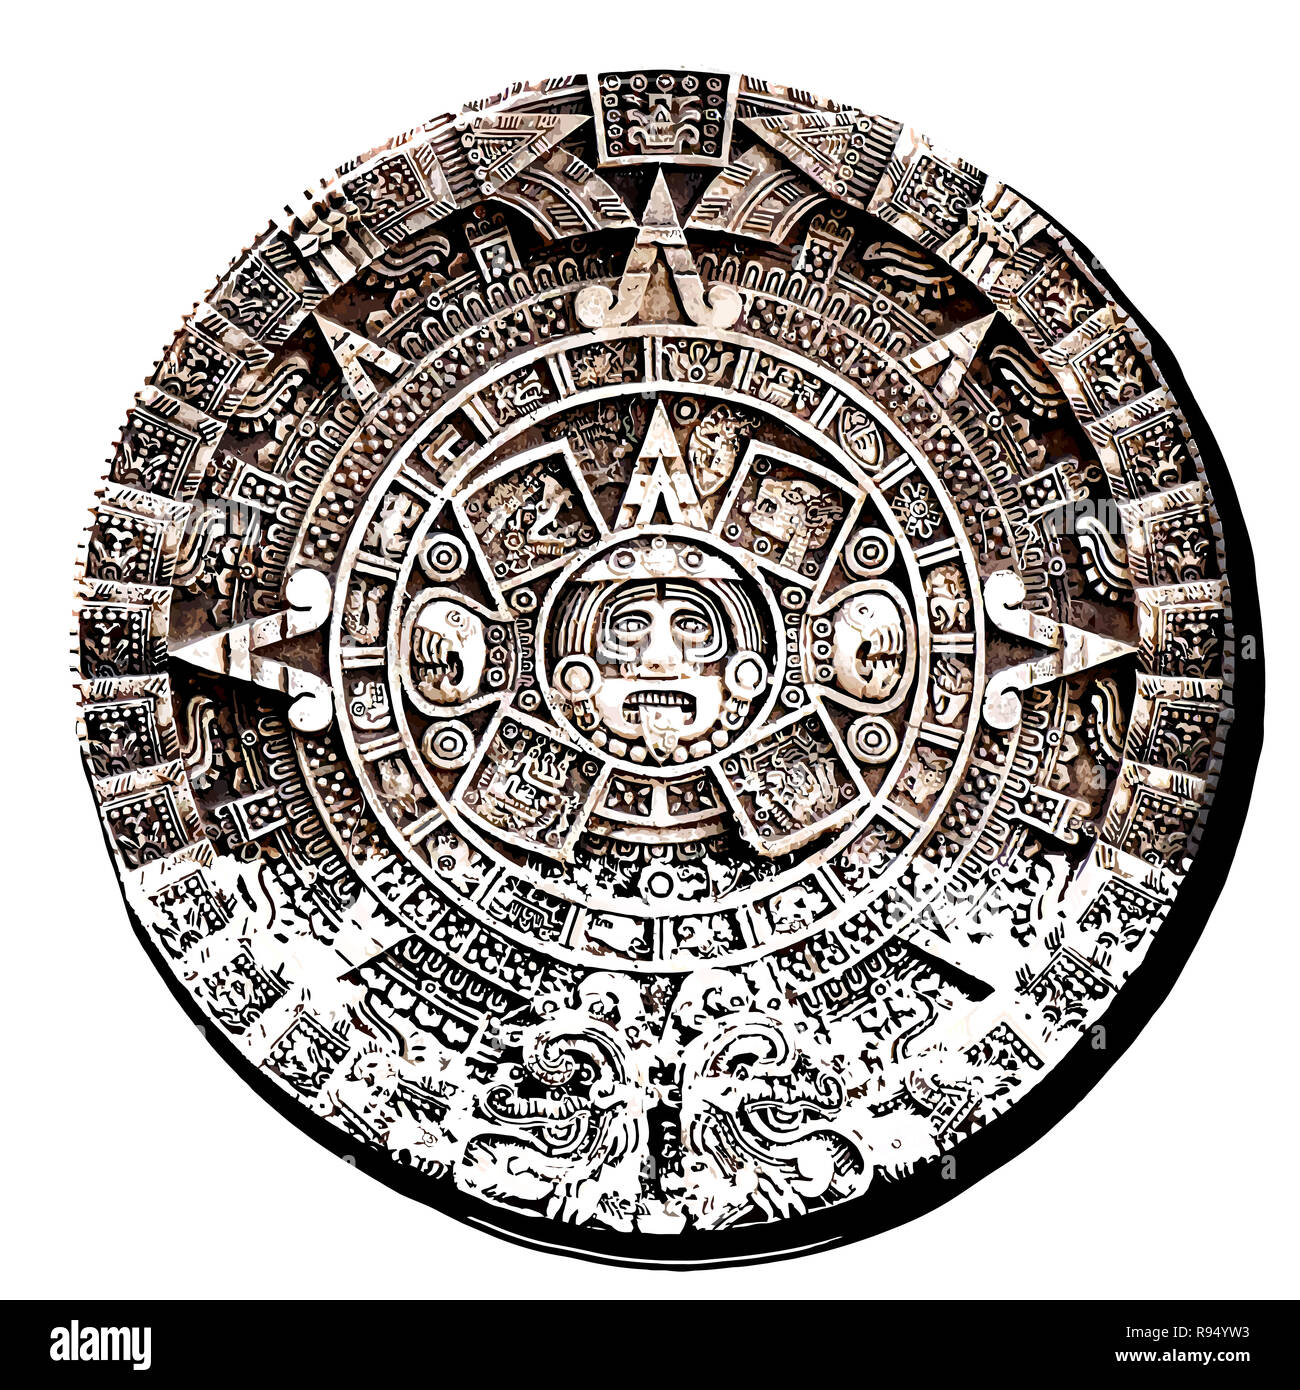 Календарь Майя вектор. Ацтекский календарь астрономия. Календарь ацтеков вектор. Конец календаря Майя. Календарь ма й я пересказ